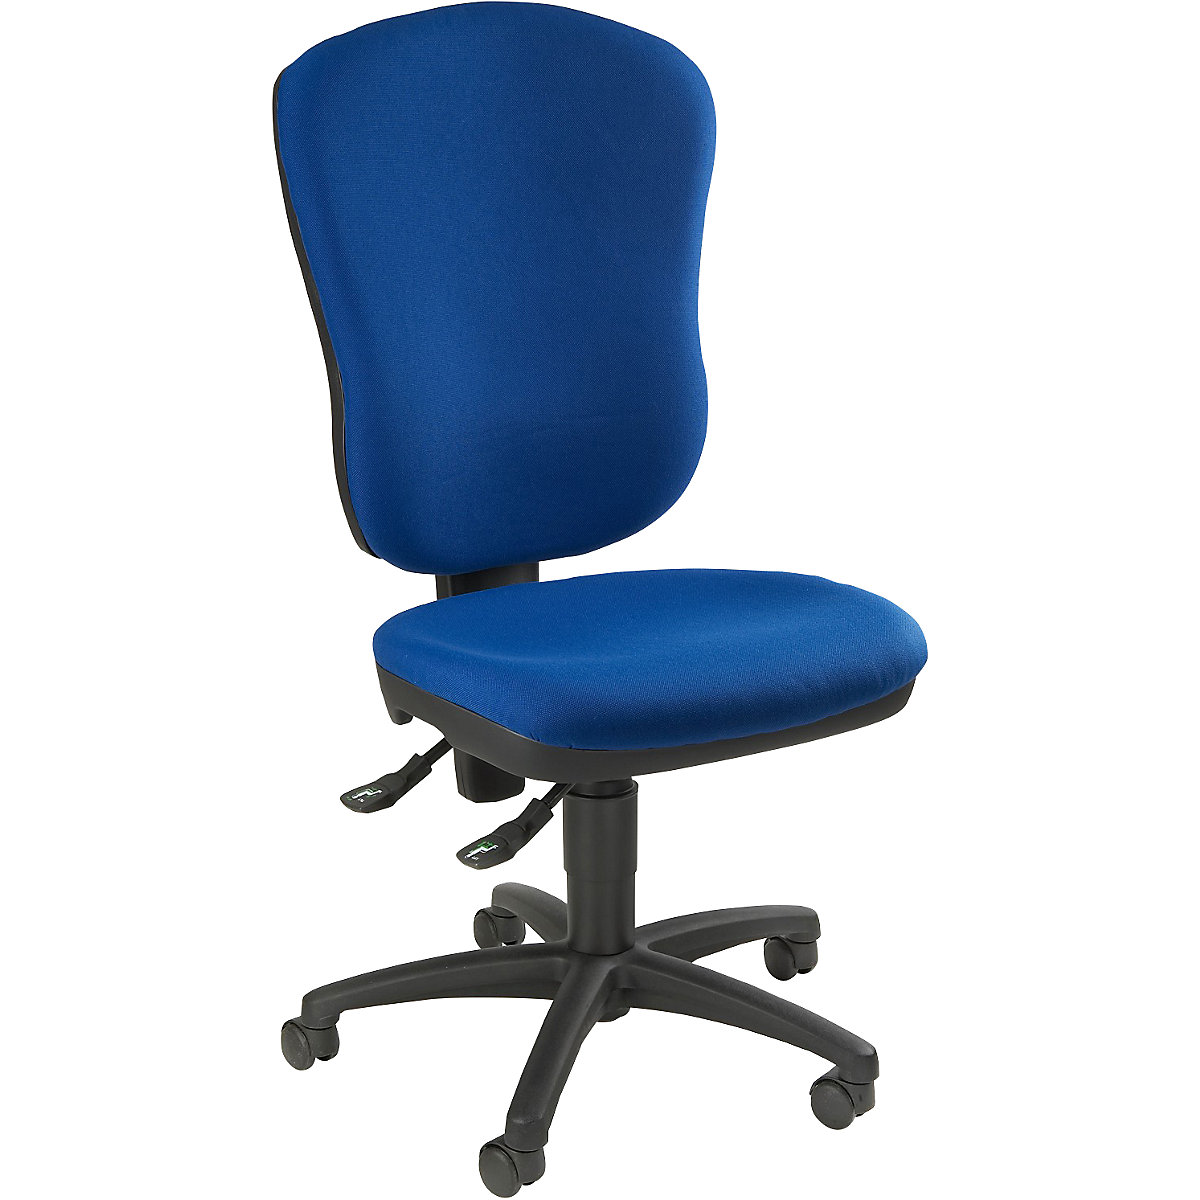 Standardní otočná židle – Topstar, bez područek, s opěrou bederních obratlů, výška opěradla 570 mm, potah modrý royal-1